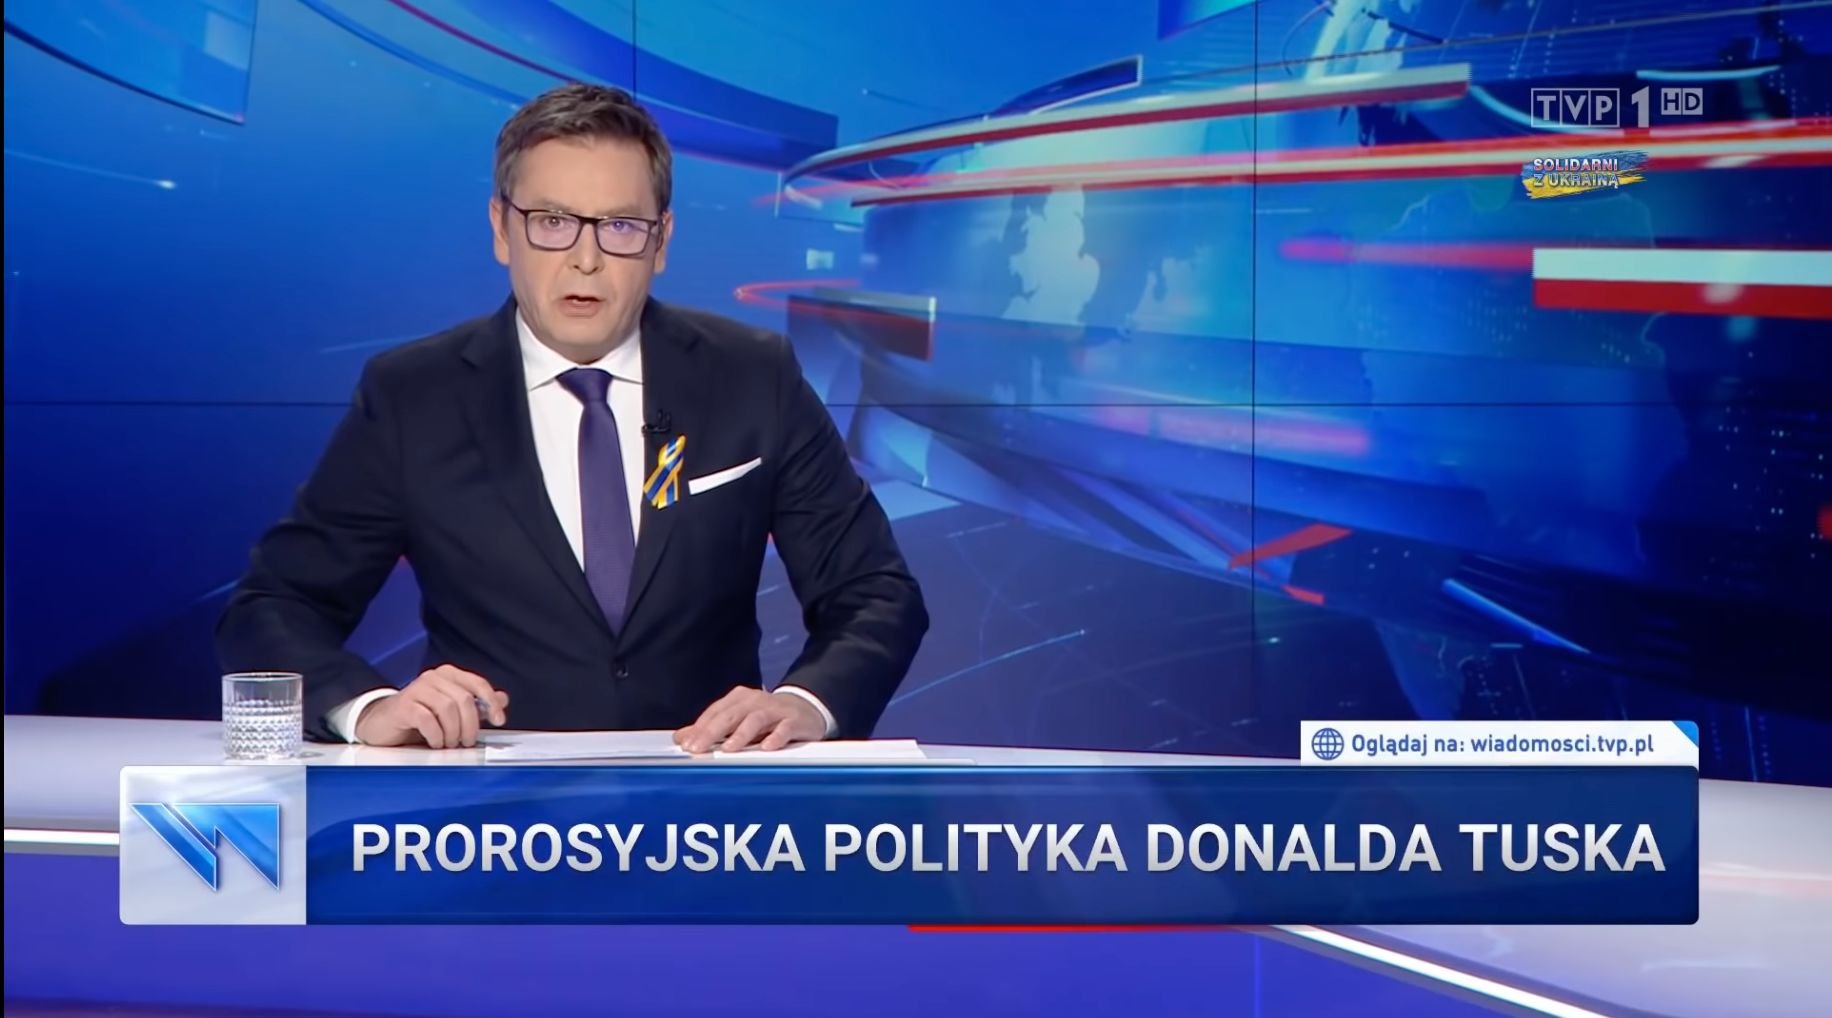 „Zrobiliśmy propagandę gorszą niż za komuny” – przyznaje gwiazda polskiej telewizji państwowej po porażce wyborczej